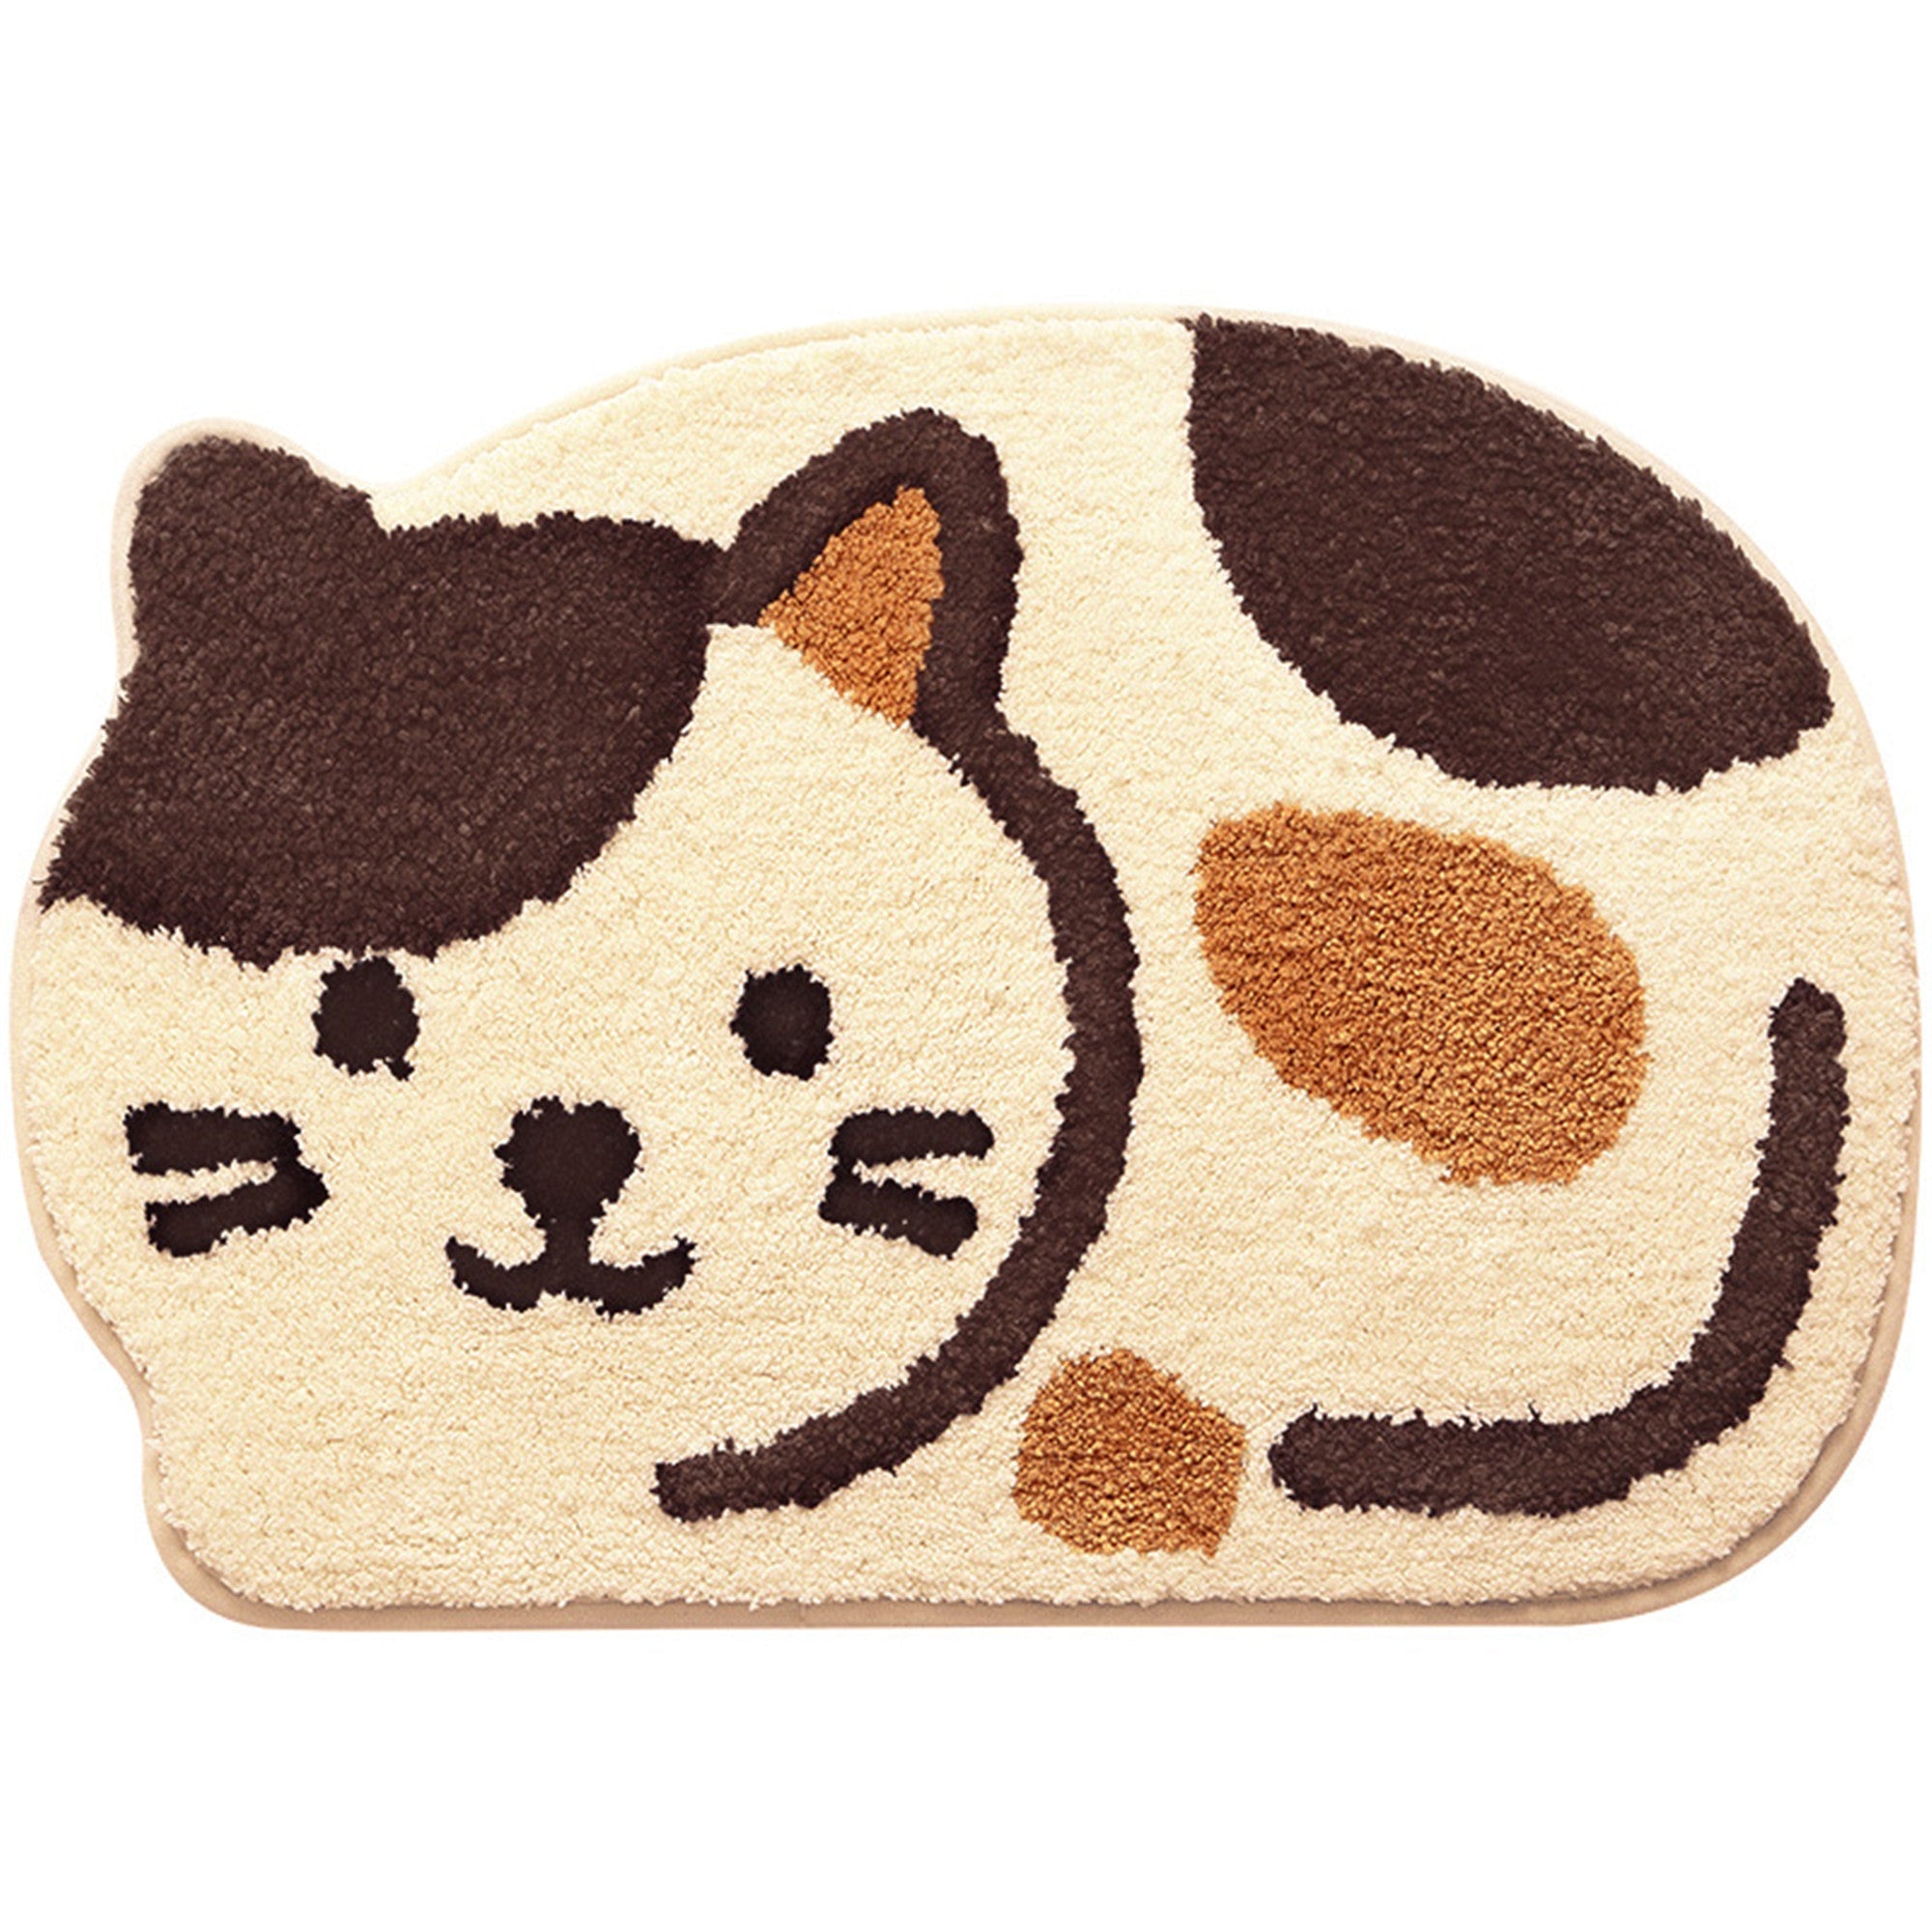 Whisker Wonderland: Adorable Cat Shaped Soft Bathroom Mat